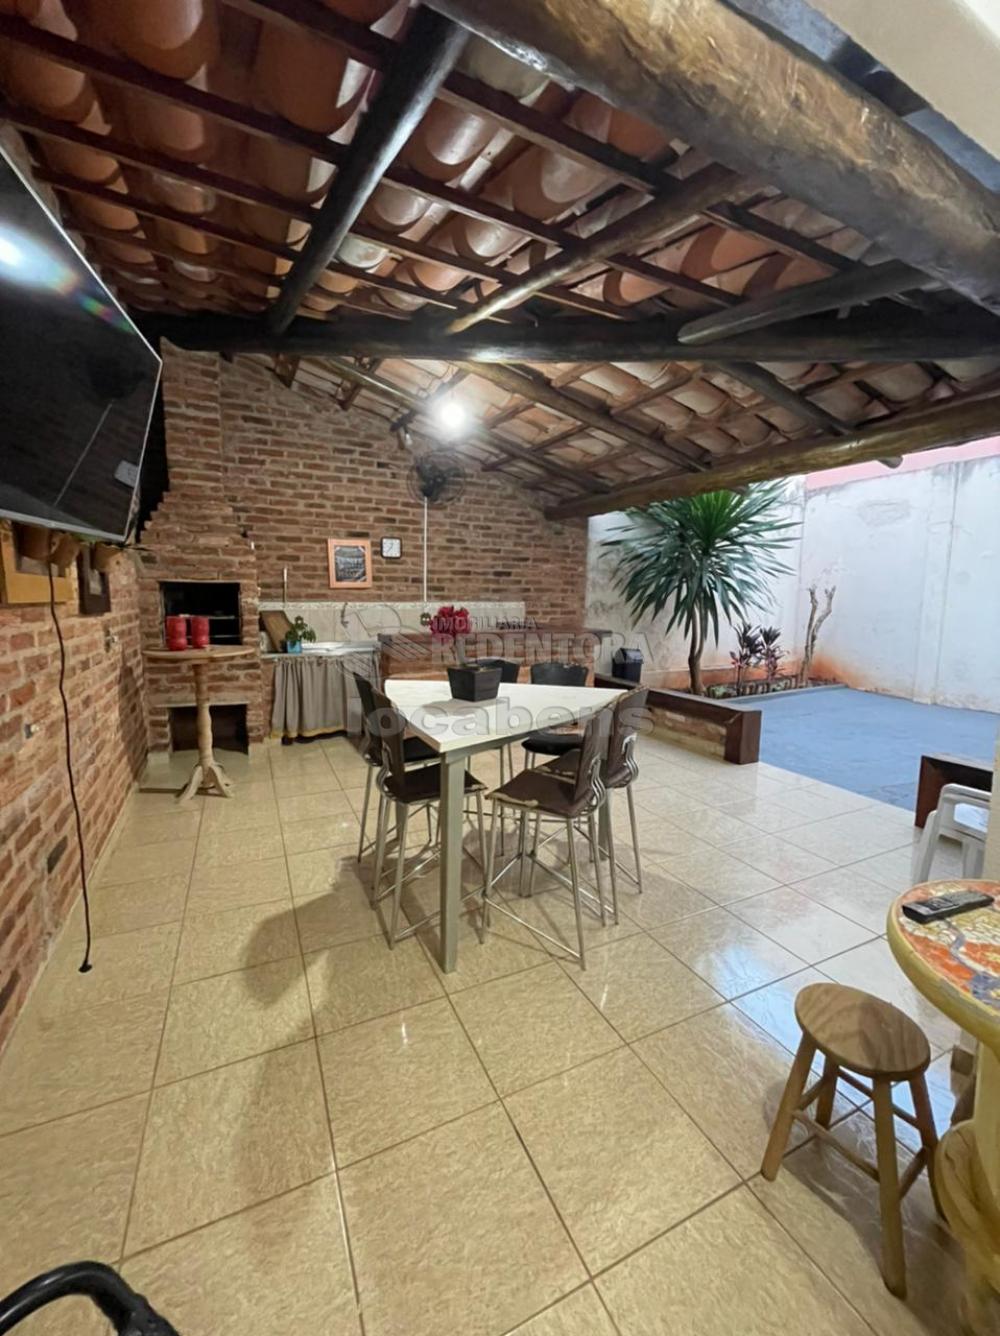 Comprar Apartamento / Padrão em São José do Rio Preto R$ 380.000,00 - Foto 12